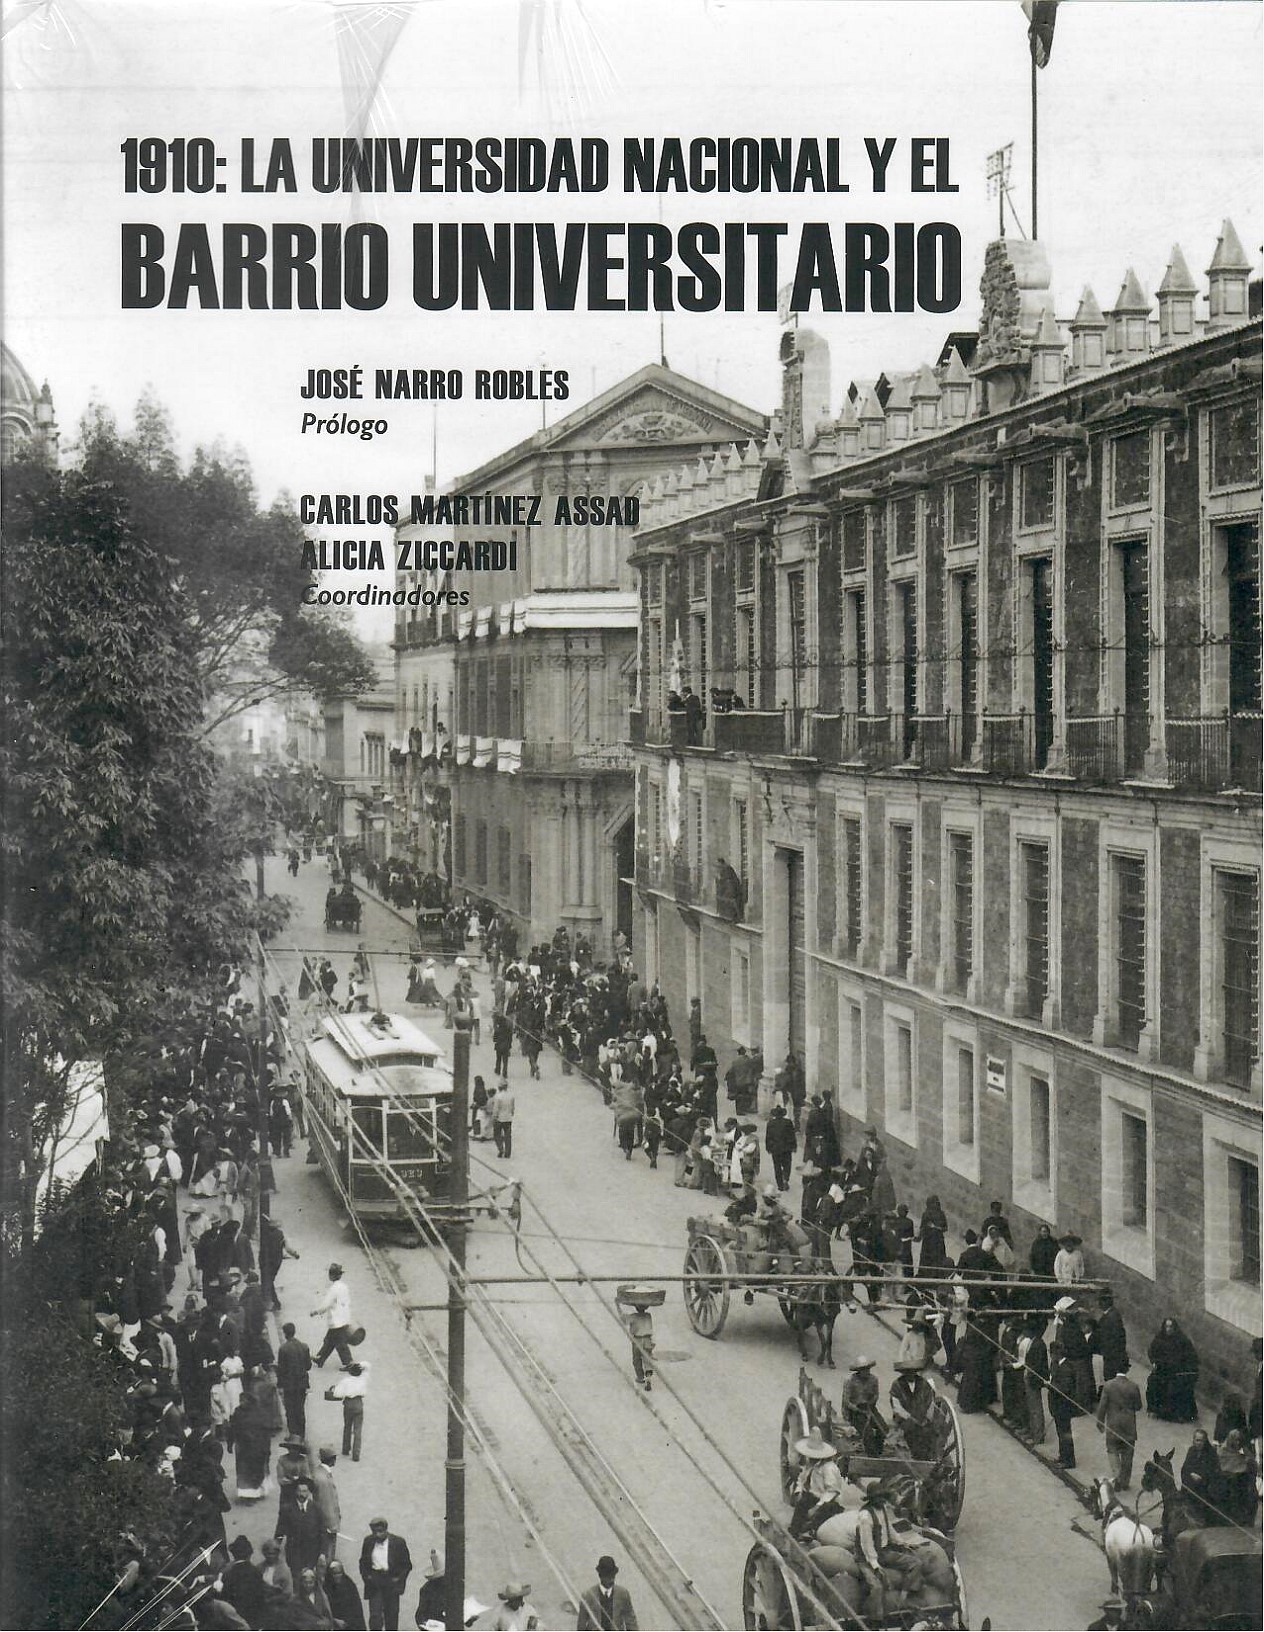 1910: La Universidad Nacional y el barrio universitario